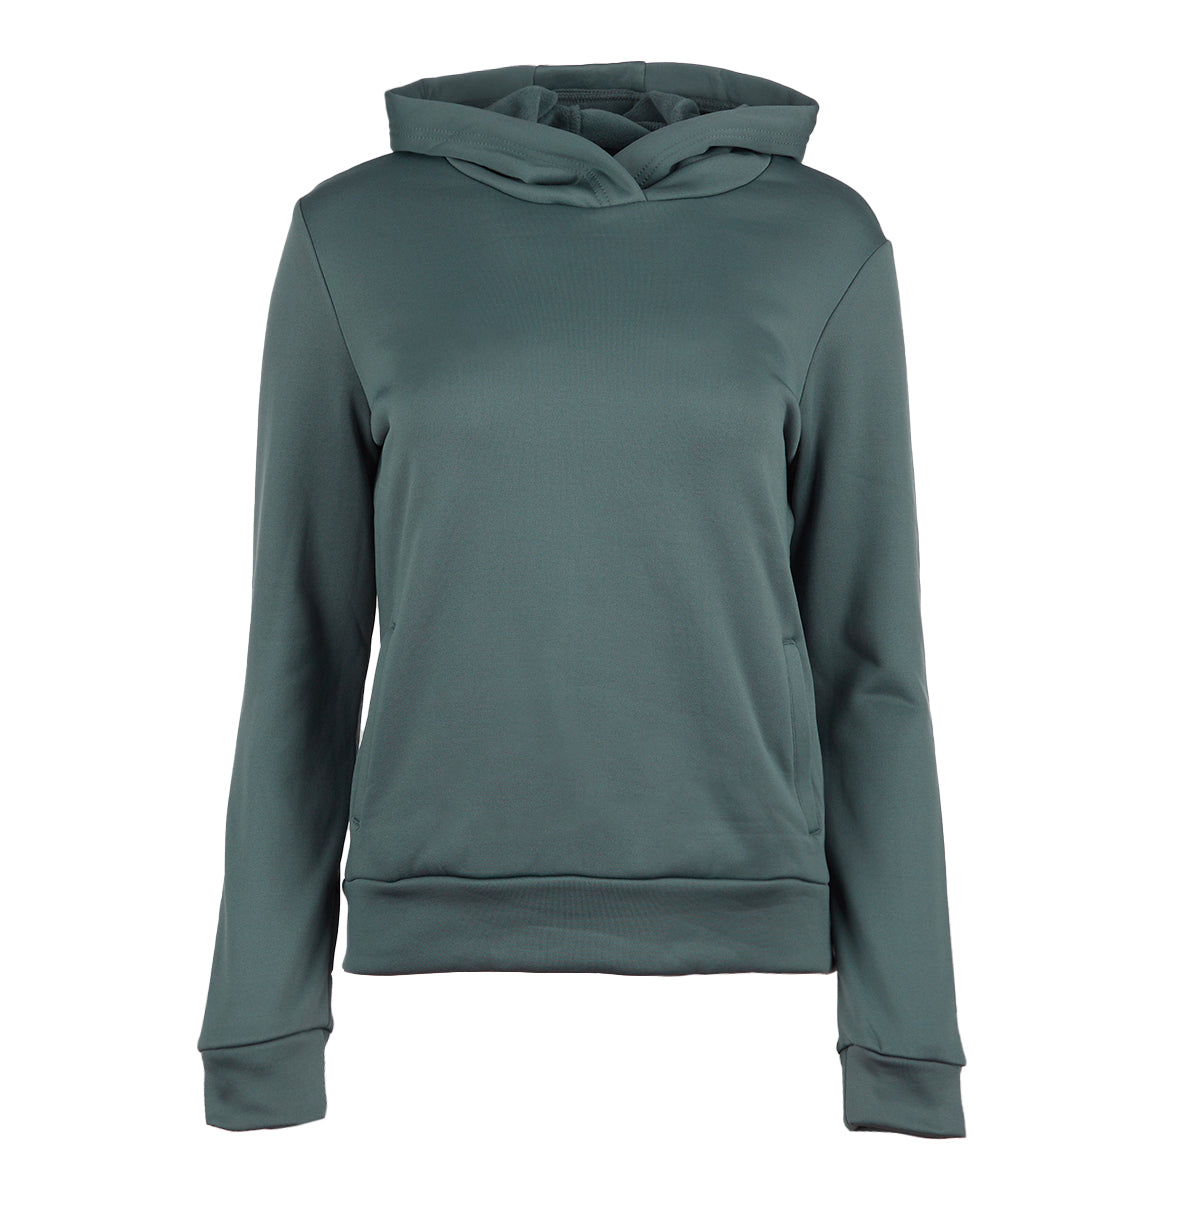 90 Degree By Reflex Womens Full-Zip Fleece Lined Hoodie Sweatshirt